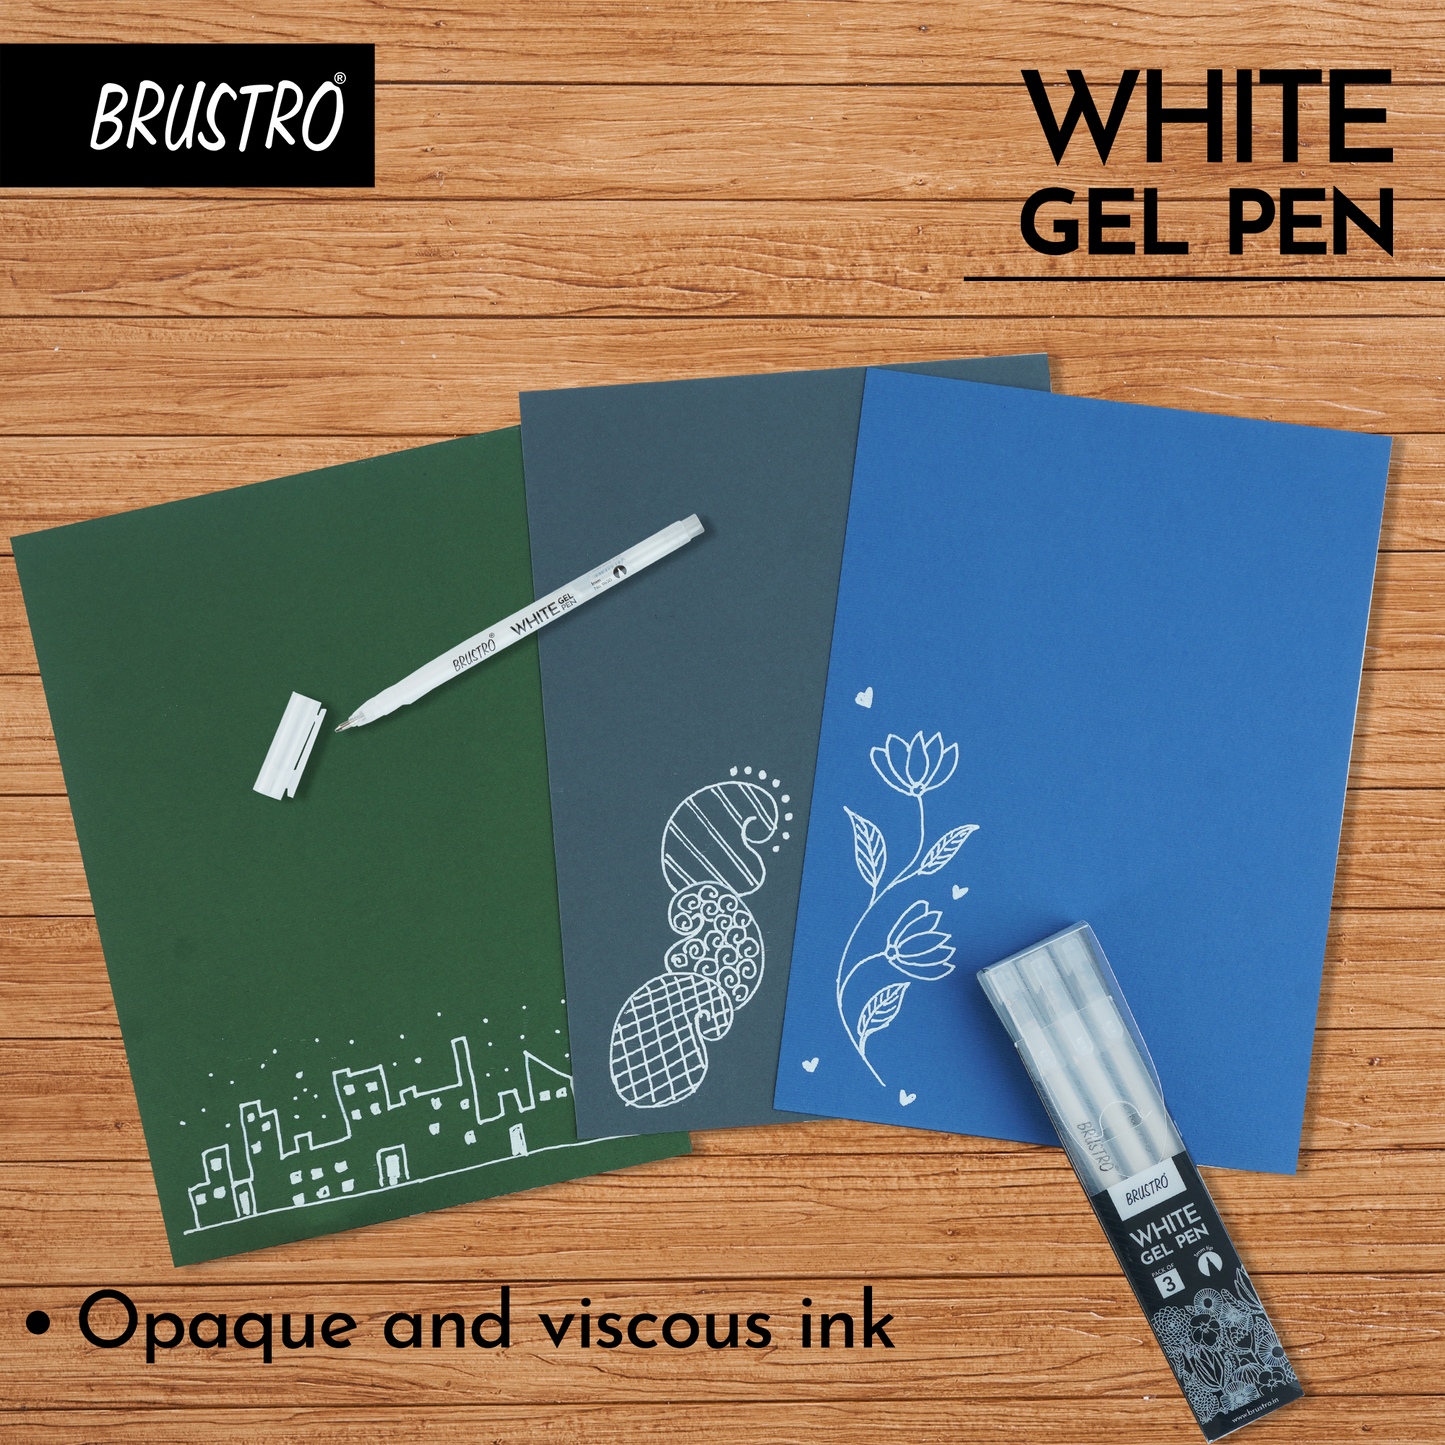 Brustro White Gel Pen Pack of - 3. Tip size - 1 mm